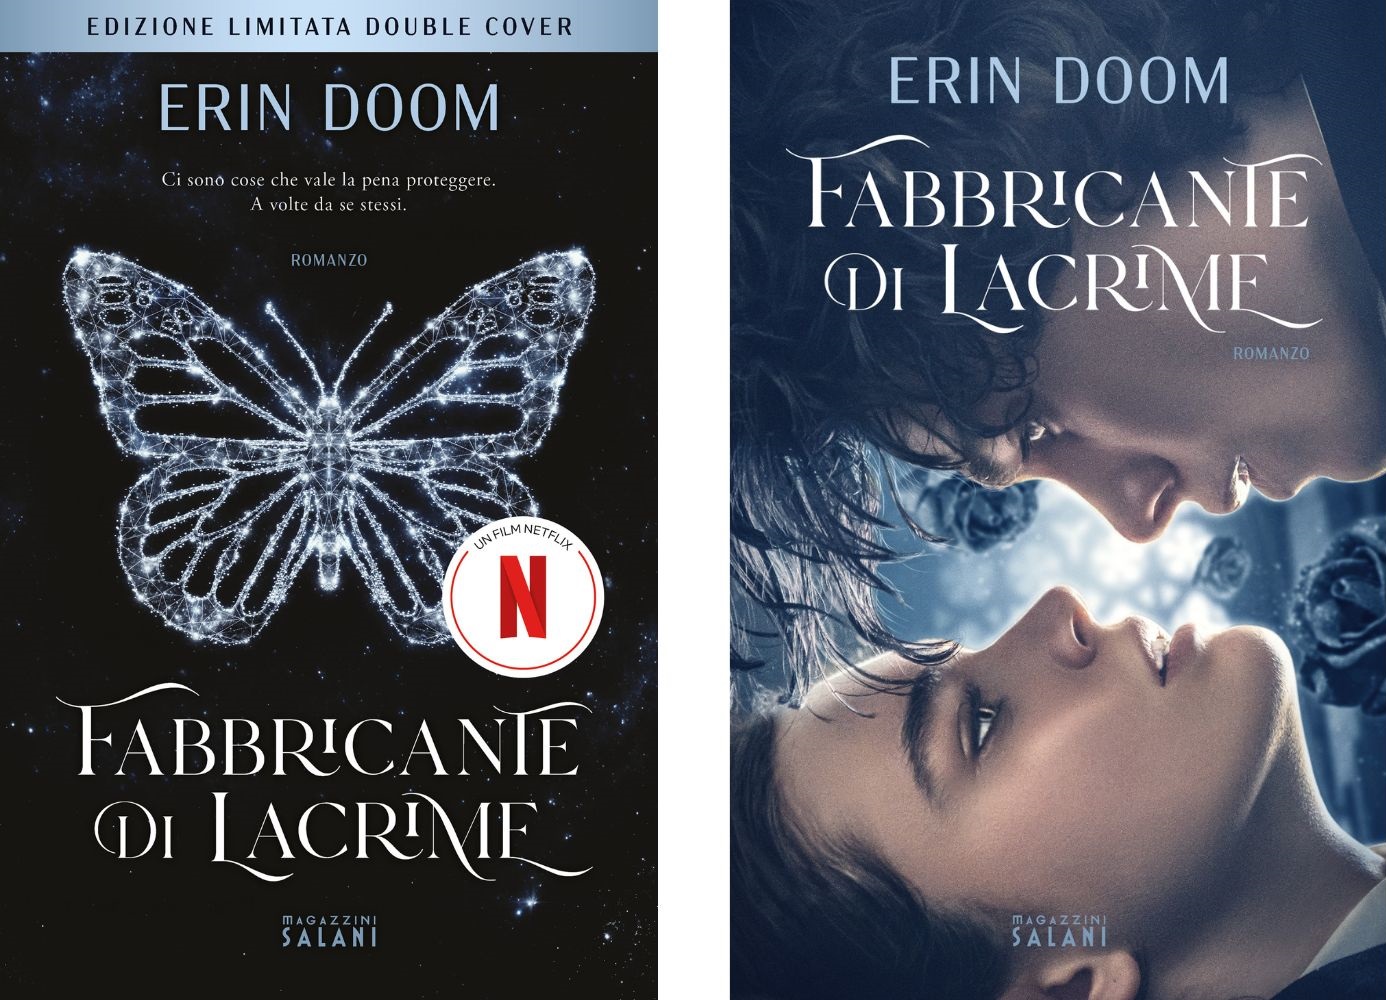 La nuova copertina double cover del libro Fabbricante di lacrime di Erin Doom